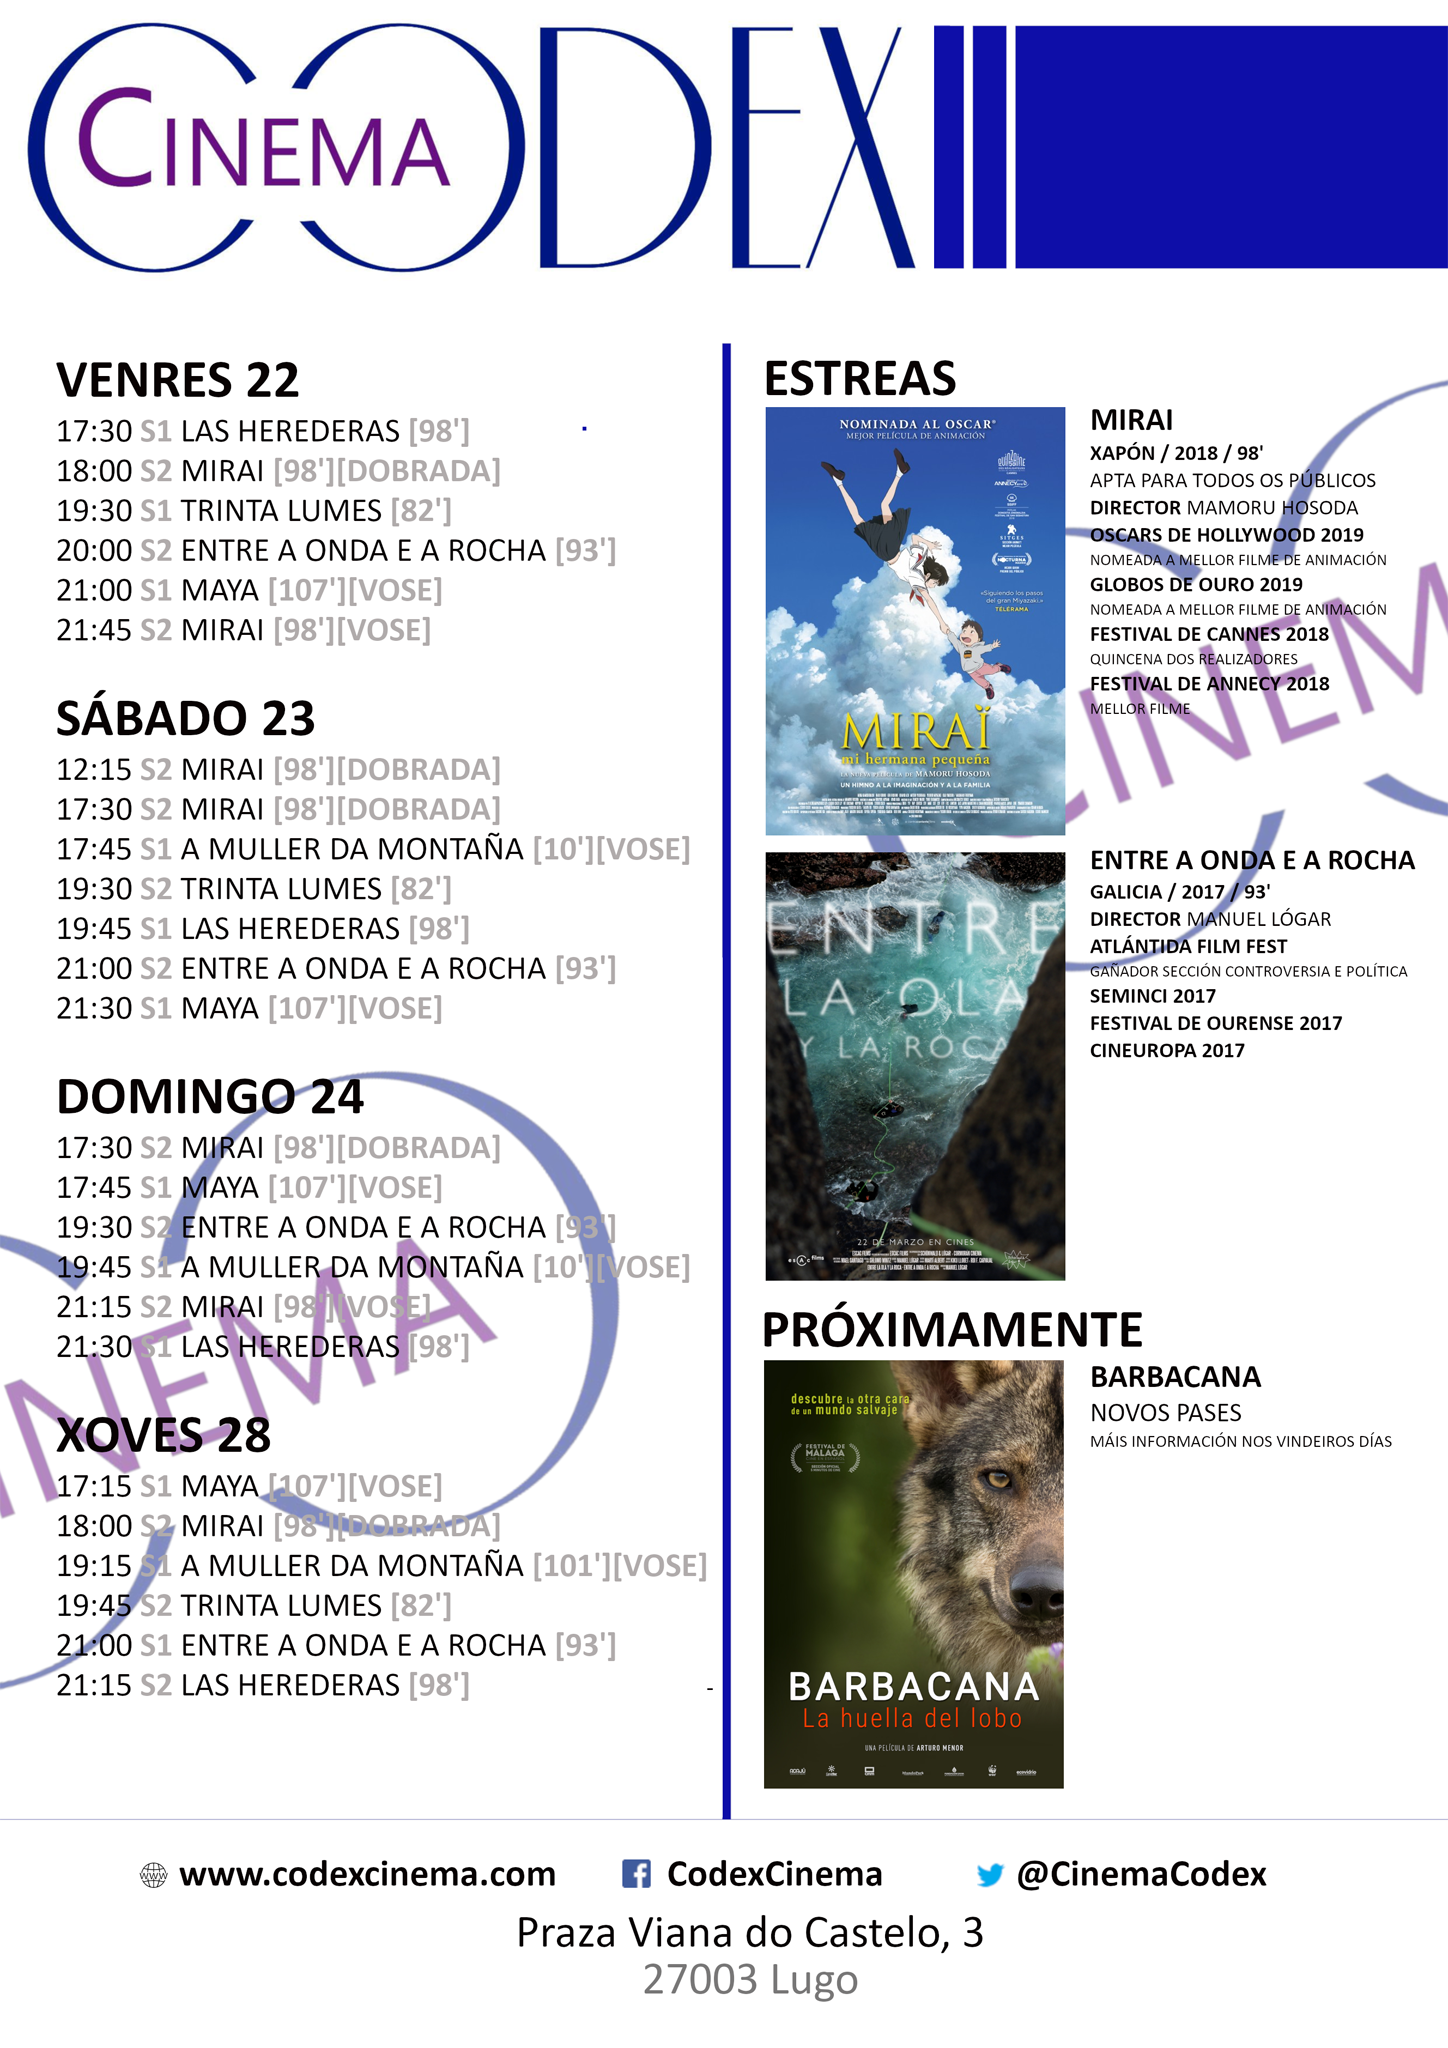 Películas en el Codex Cinema del 22 al 28 de marzo